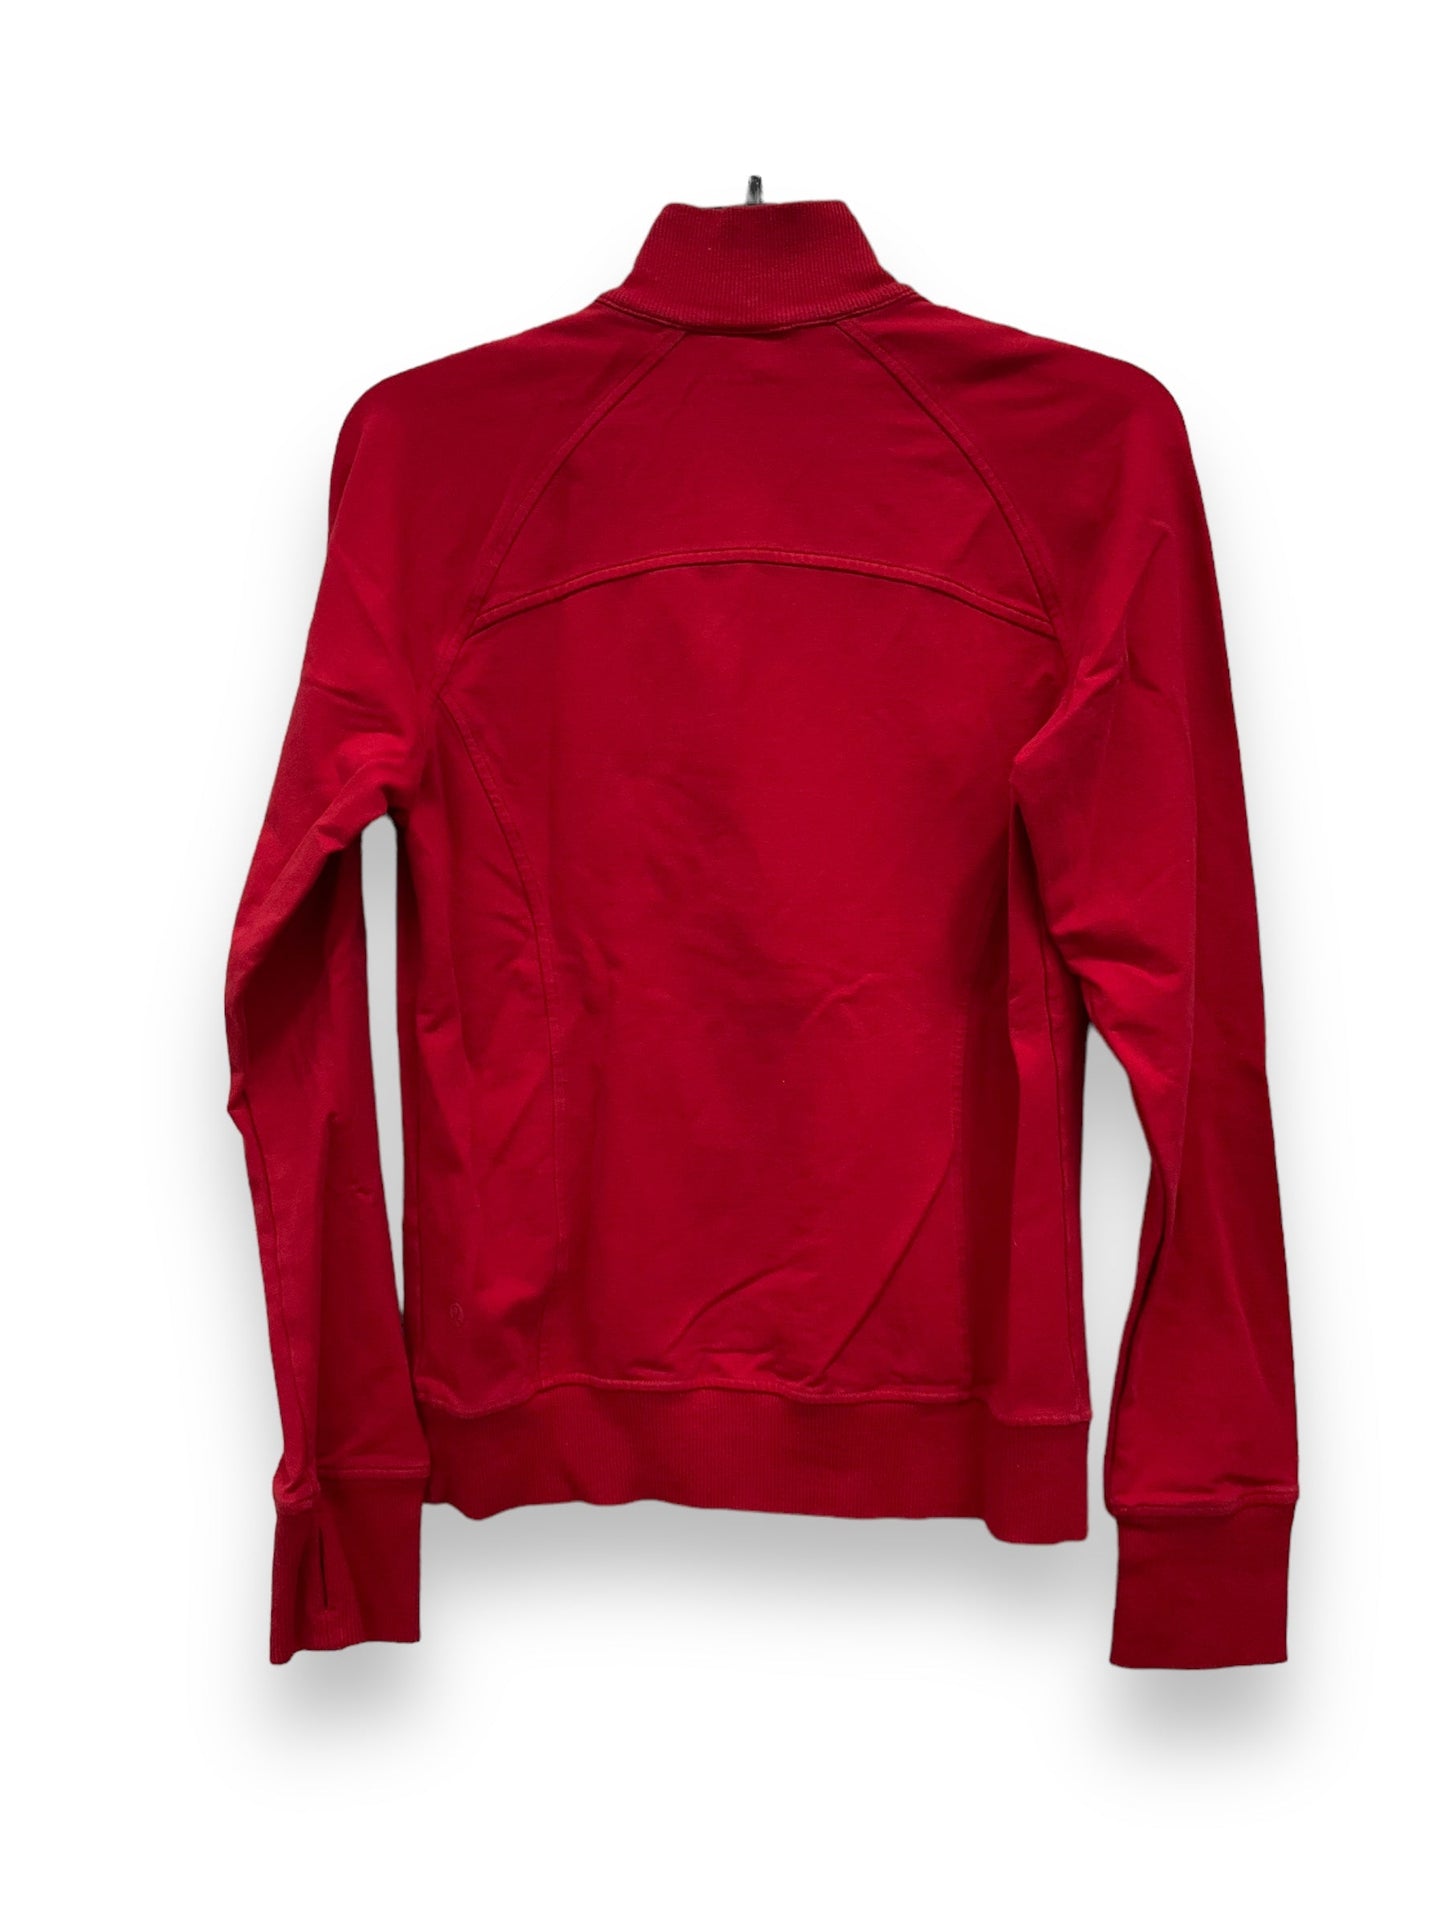 Red Athletic Jacket Lululemon, Size 6